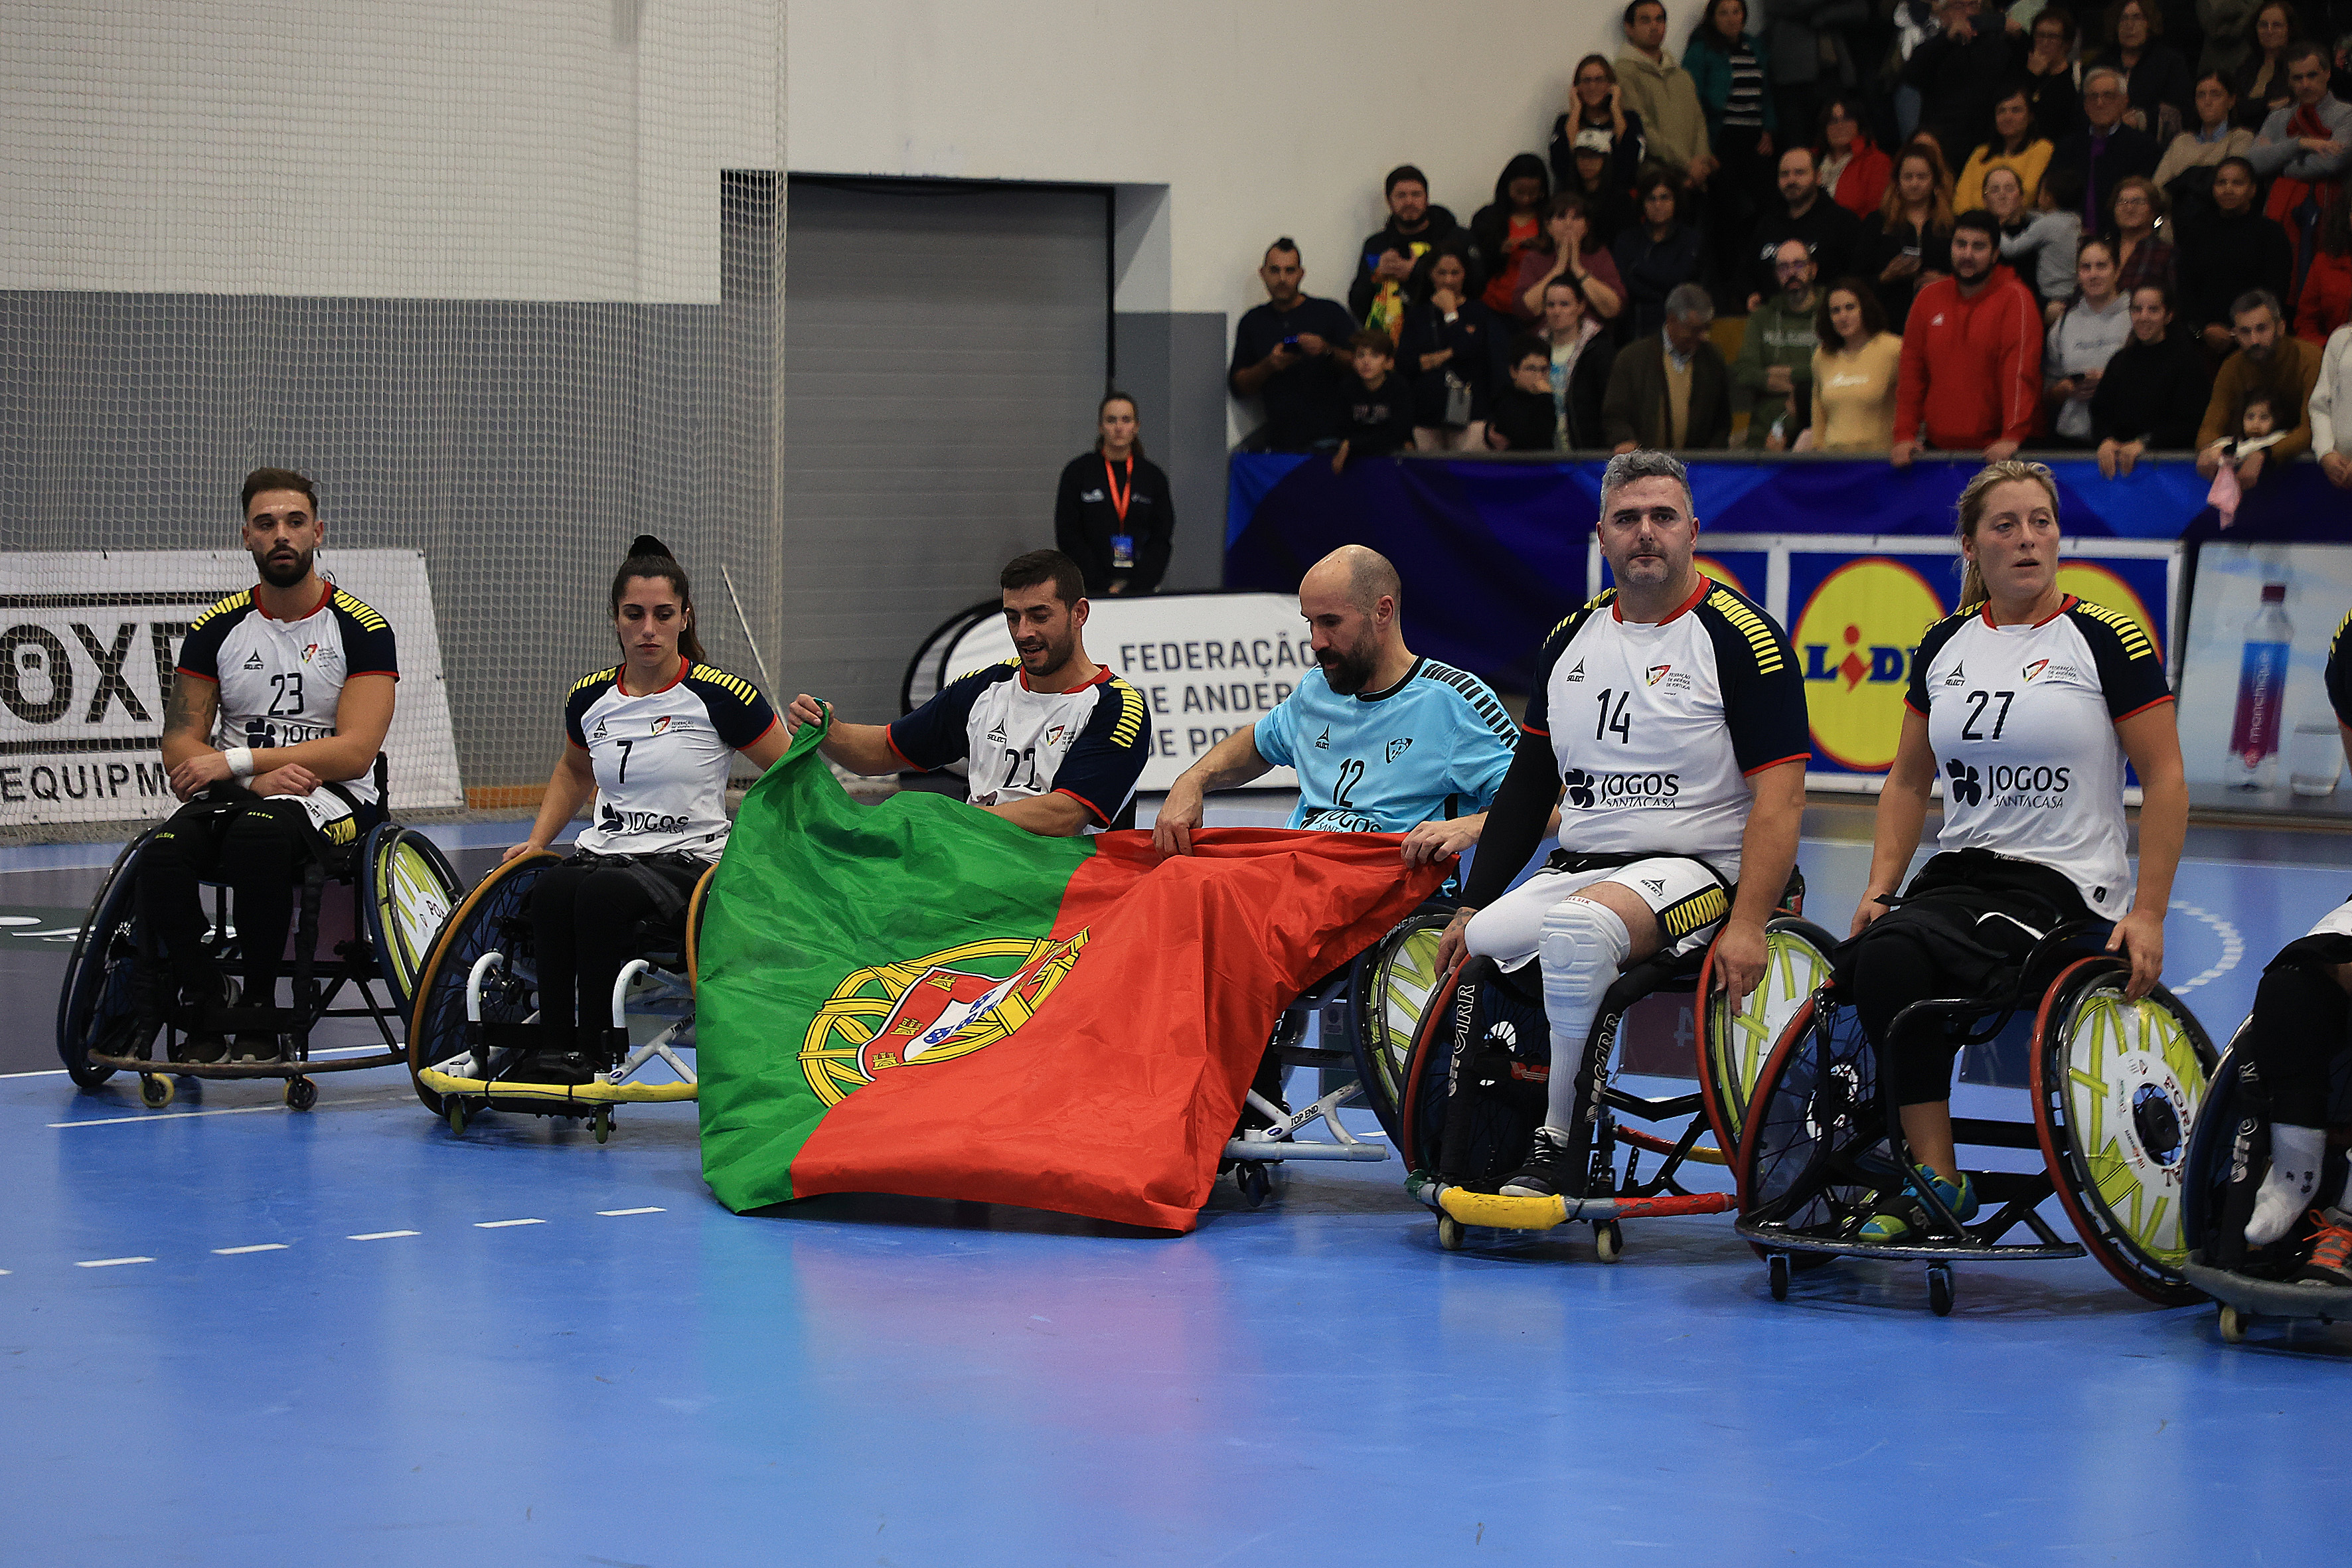 No andebol em cadeira de rodas Portugal é 'rei' da Europa e do Mundo. O  sonho, agora, são os Jogos Paralímpicos - Jogos Paralimpicos - SAPO Desporto